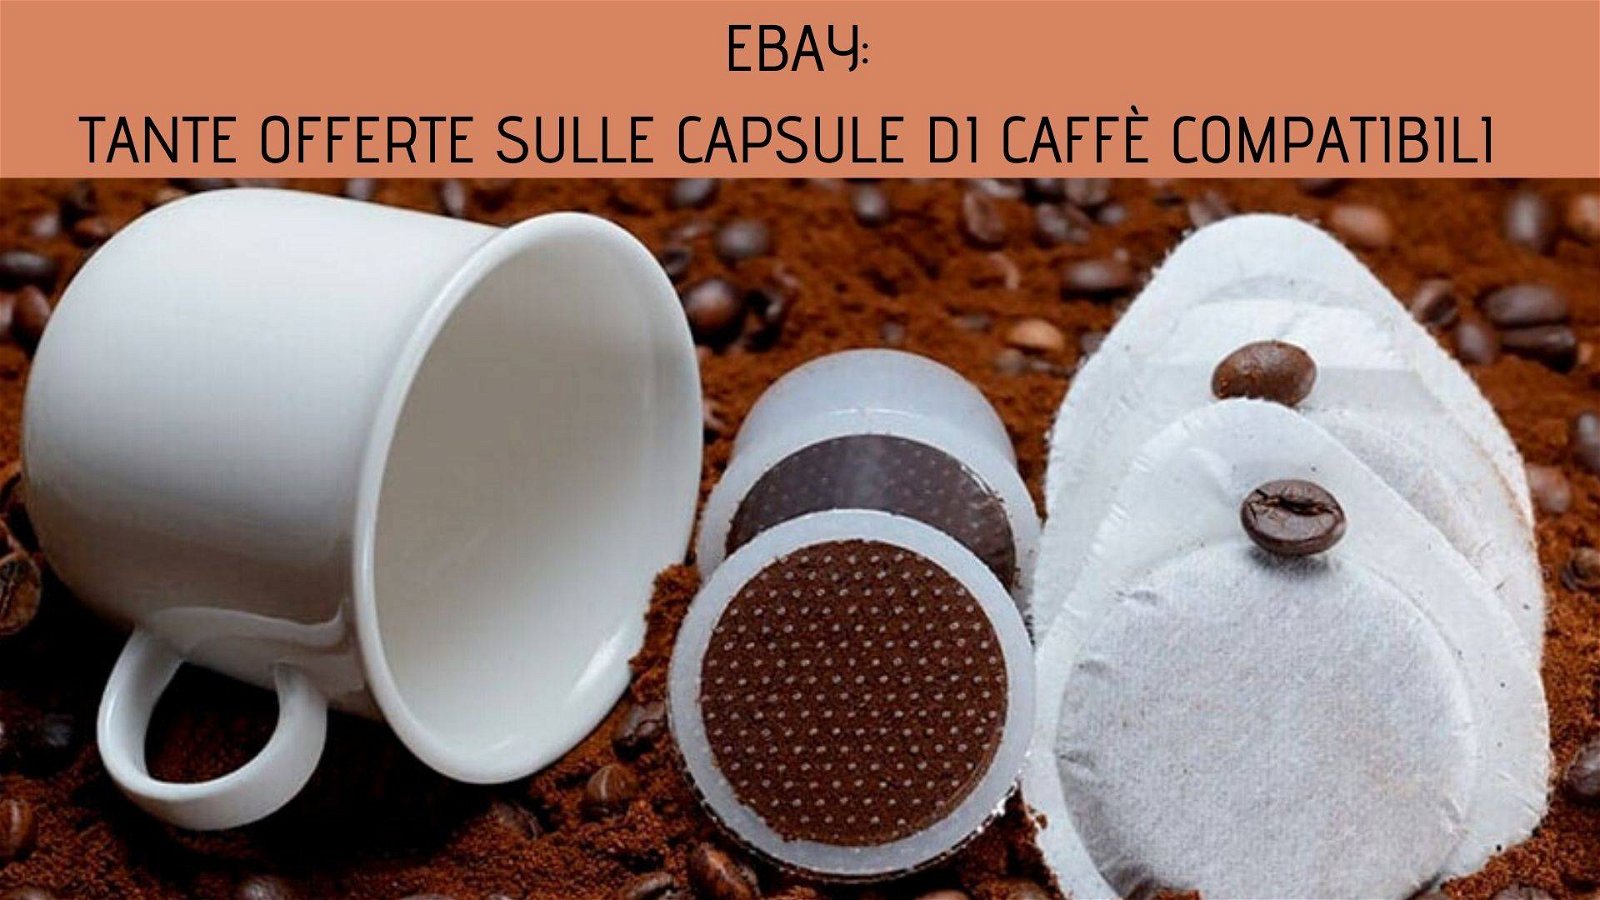 Immagine di Tante offerte sulle capsule di caffè compatibili su eBay